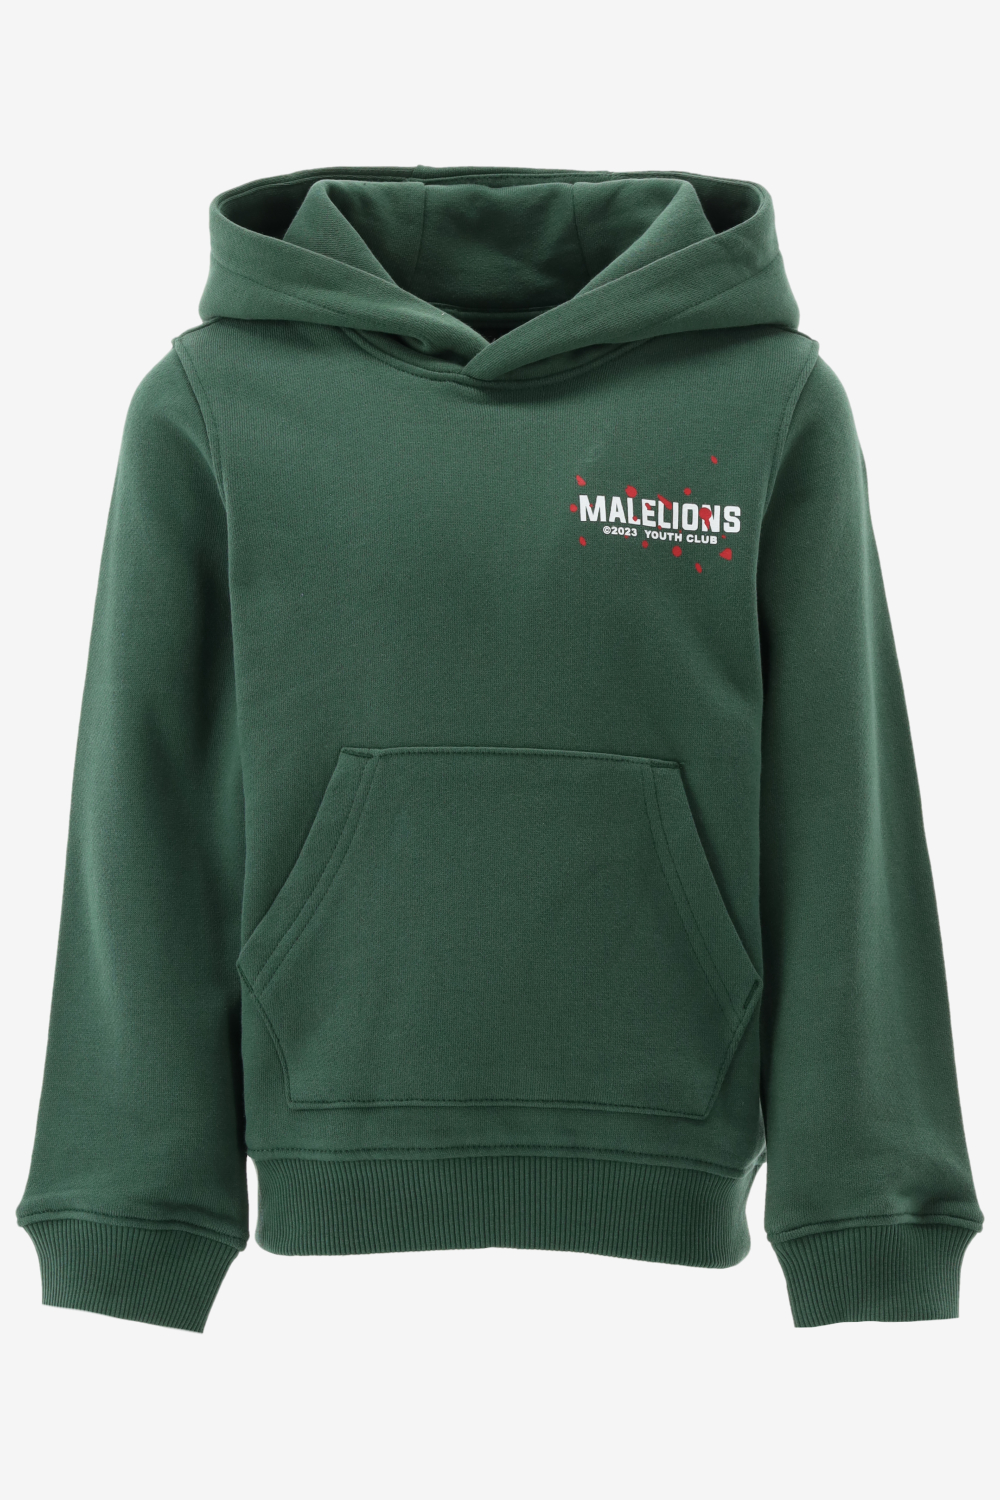 Malelions - Hoodie - Dark Green - Maat 176